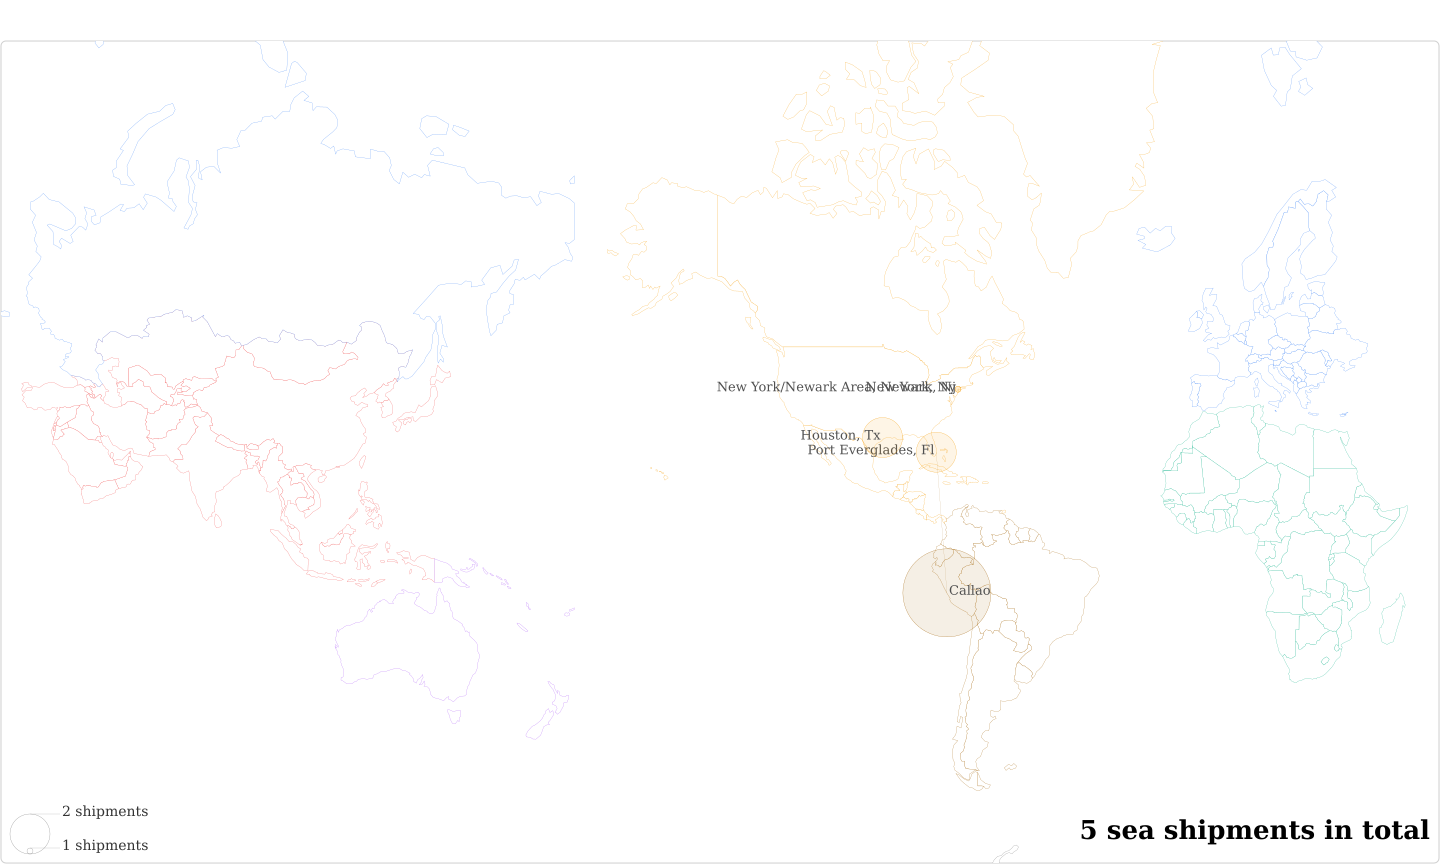 Britt Peru Sac's Imports Per Country Map